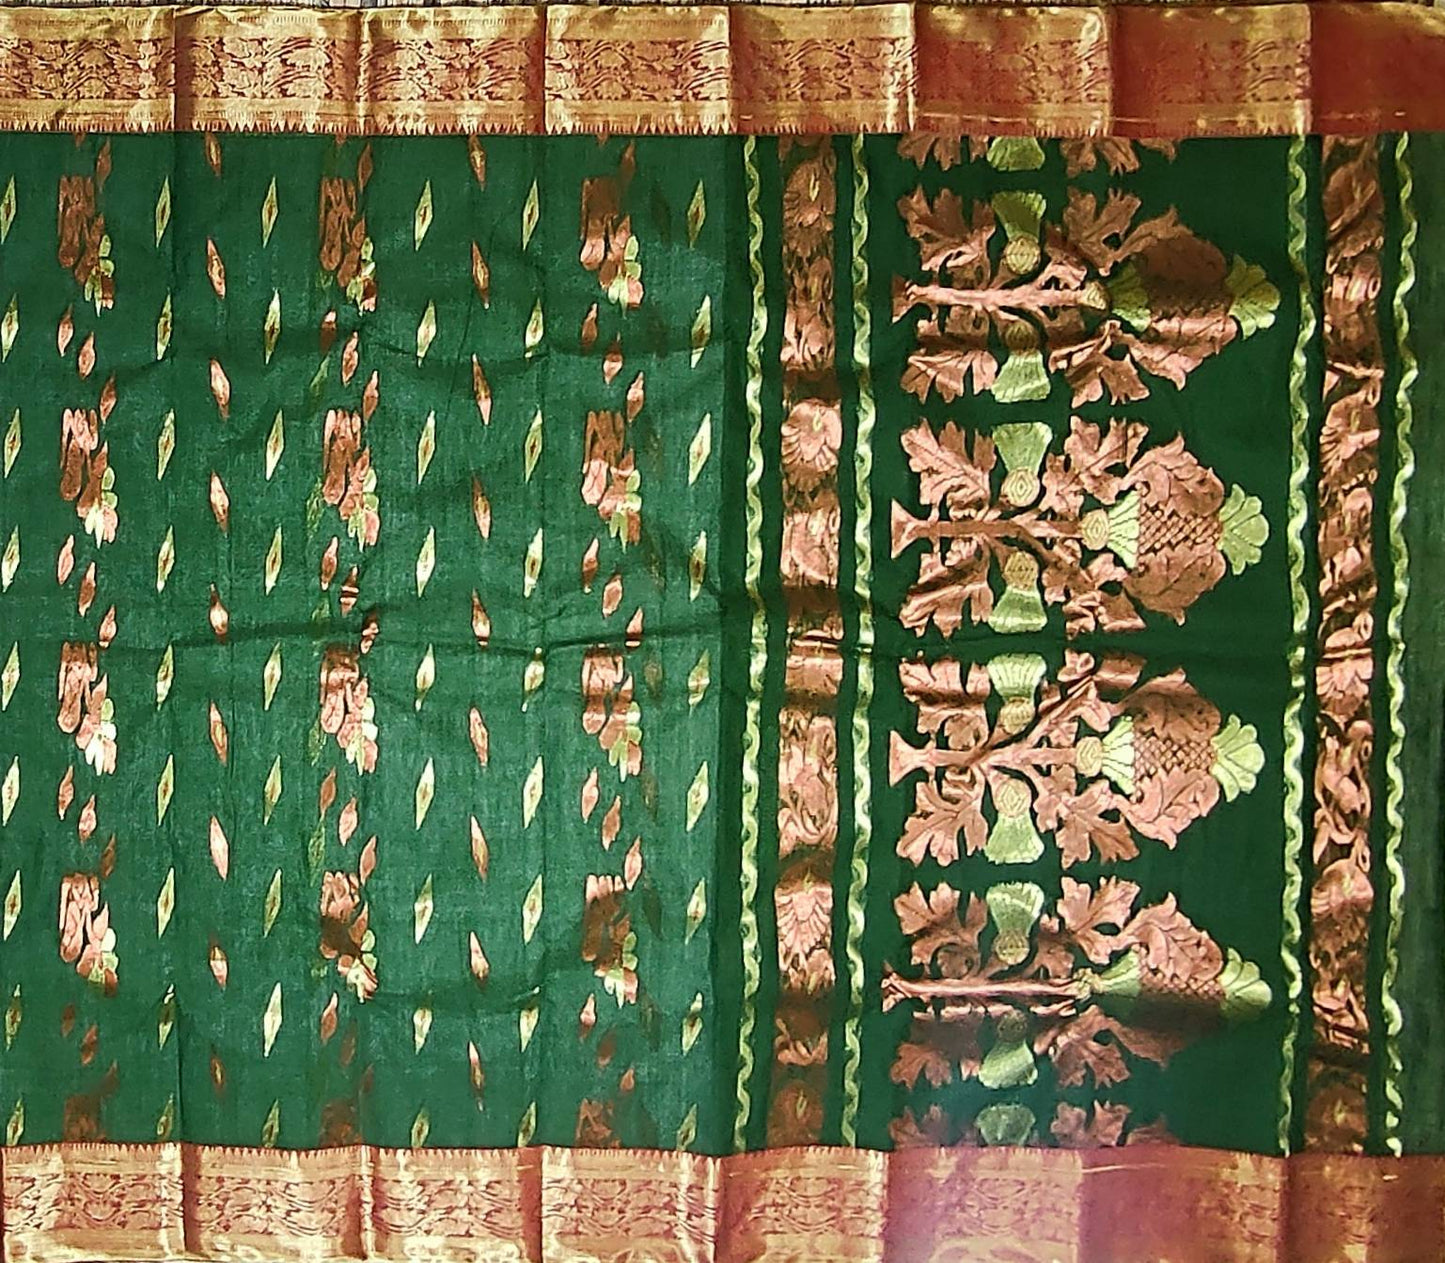 Pradip Fabrics Woven Tant Banarasi Deep Green Color Saree